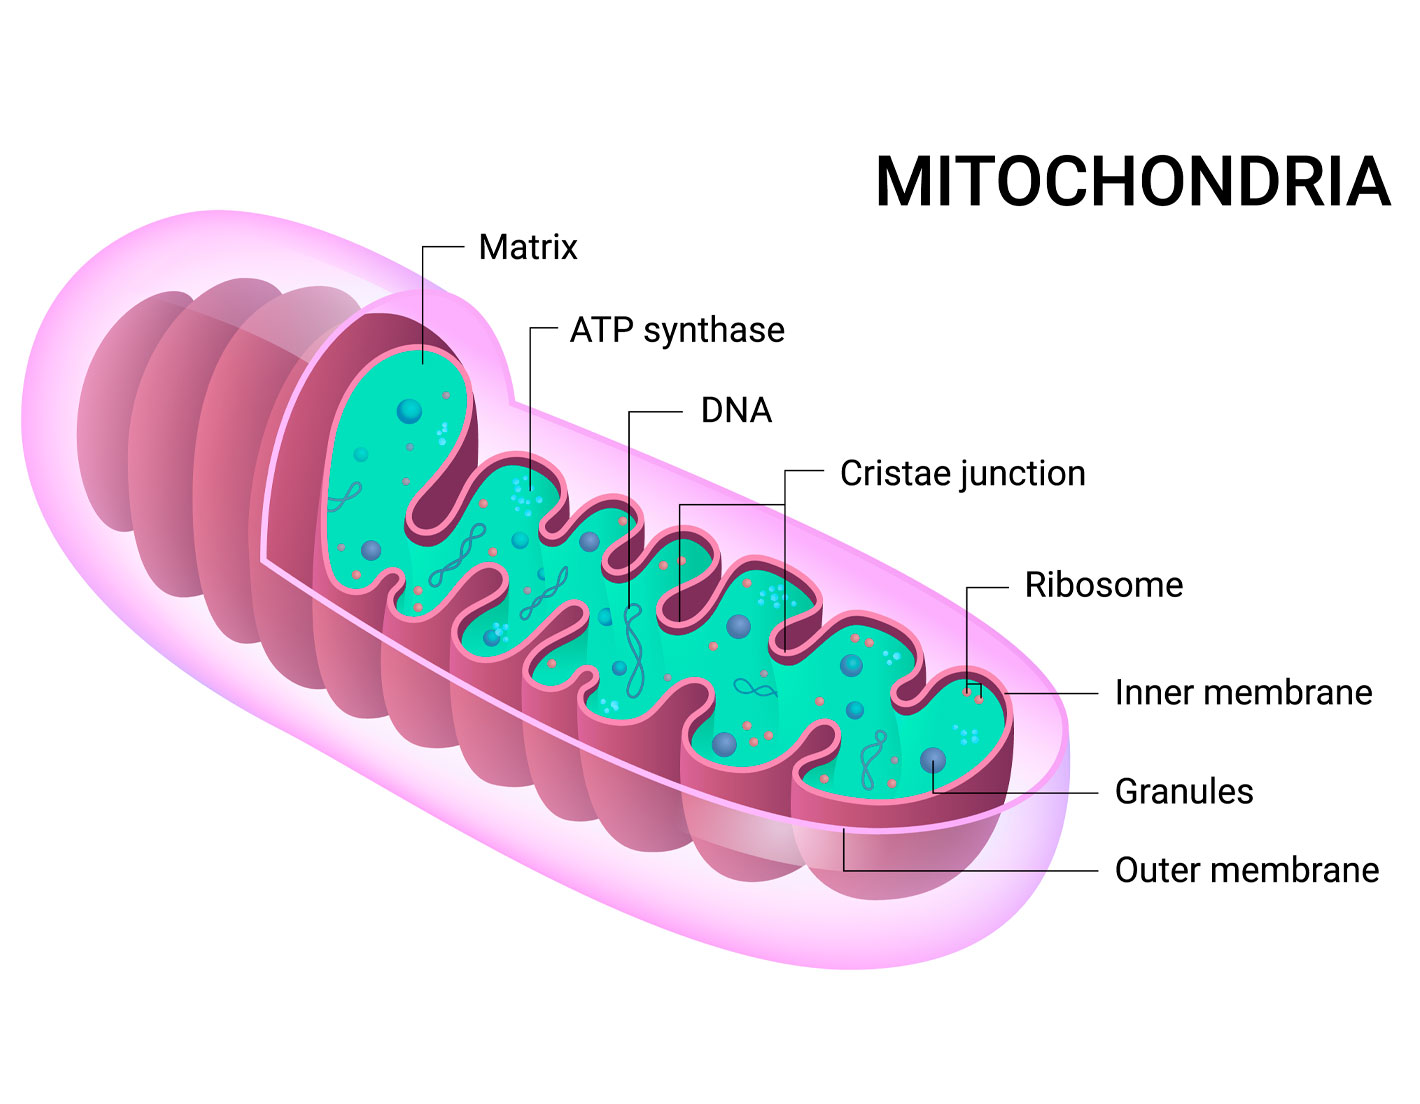 gip-haeusliche-intensivpflege-mitochondriopathie-aufbau-2er